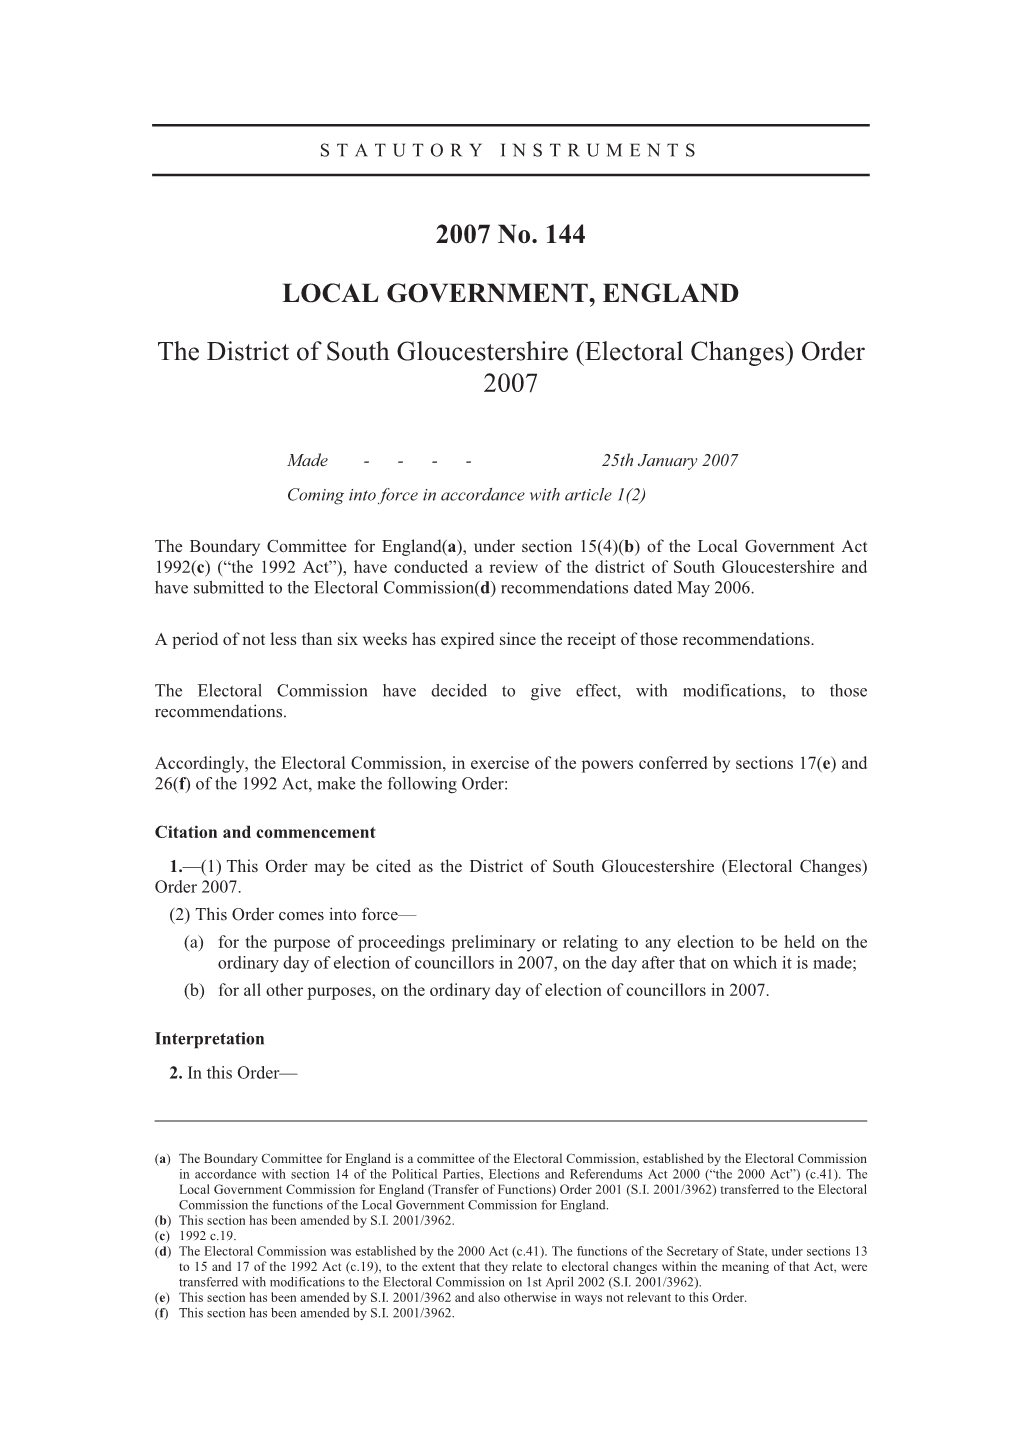 Electoral Changes) Order 2007